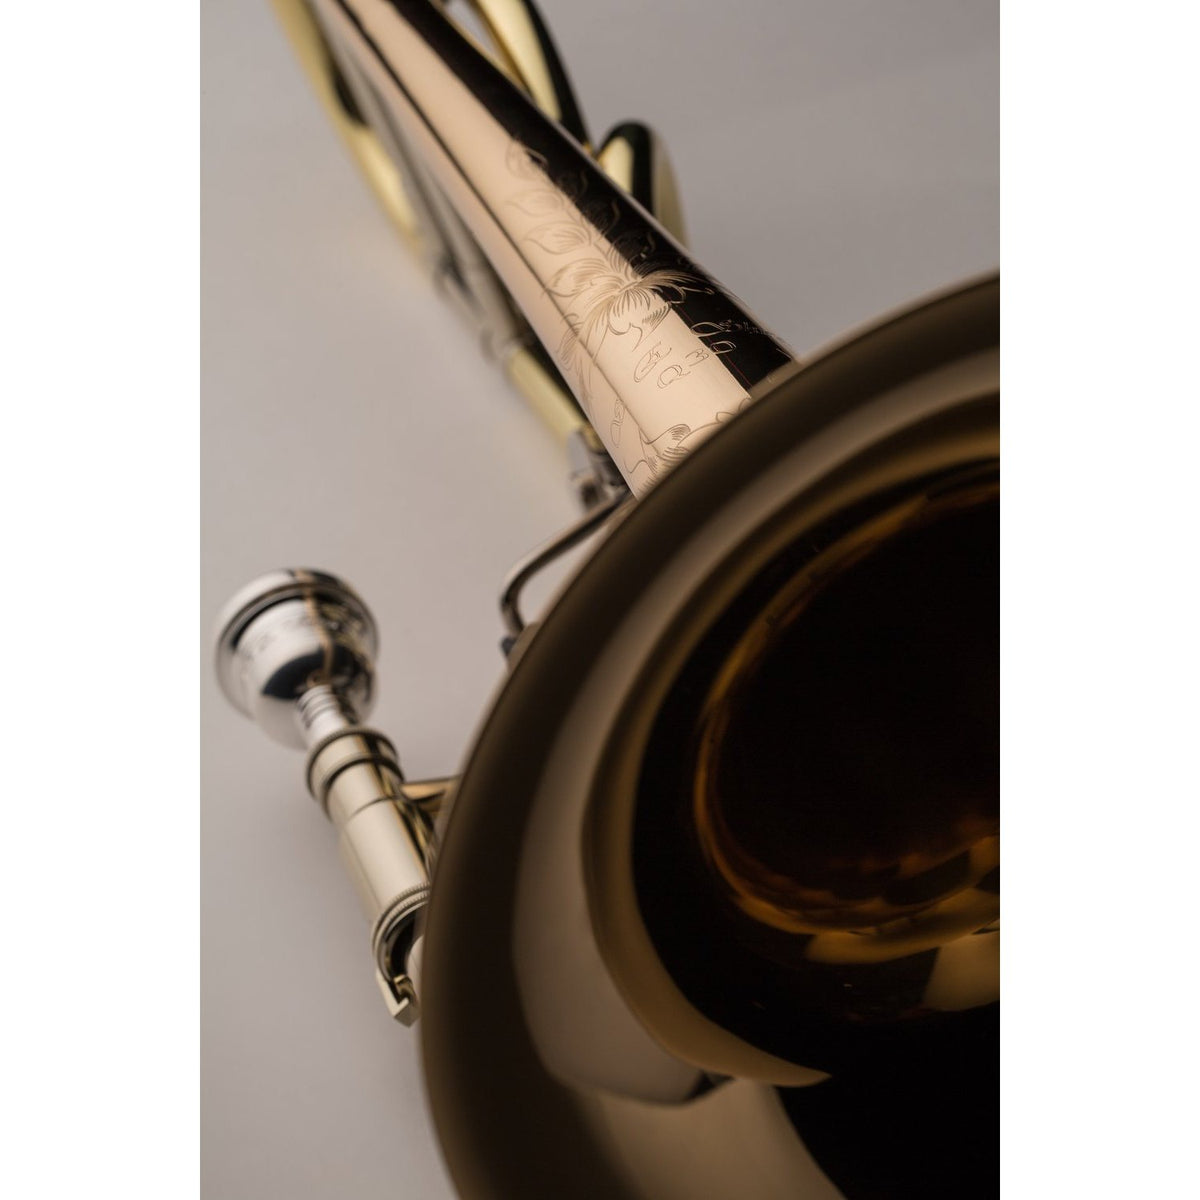 S.E. Shires - Q30GR - Q Series Large Bore Bb/F Tenor Trombone w/ Rotary Valve-Trombone-S.E. Shires-Music Elements